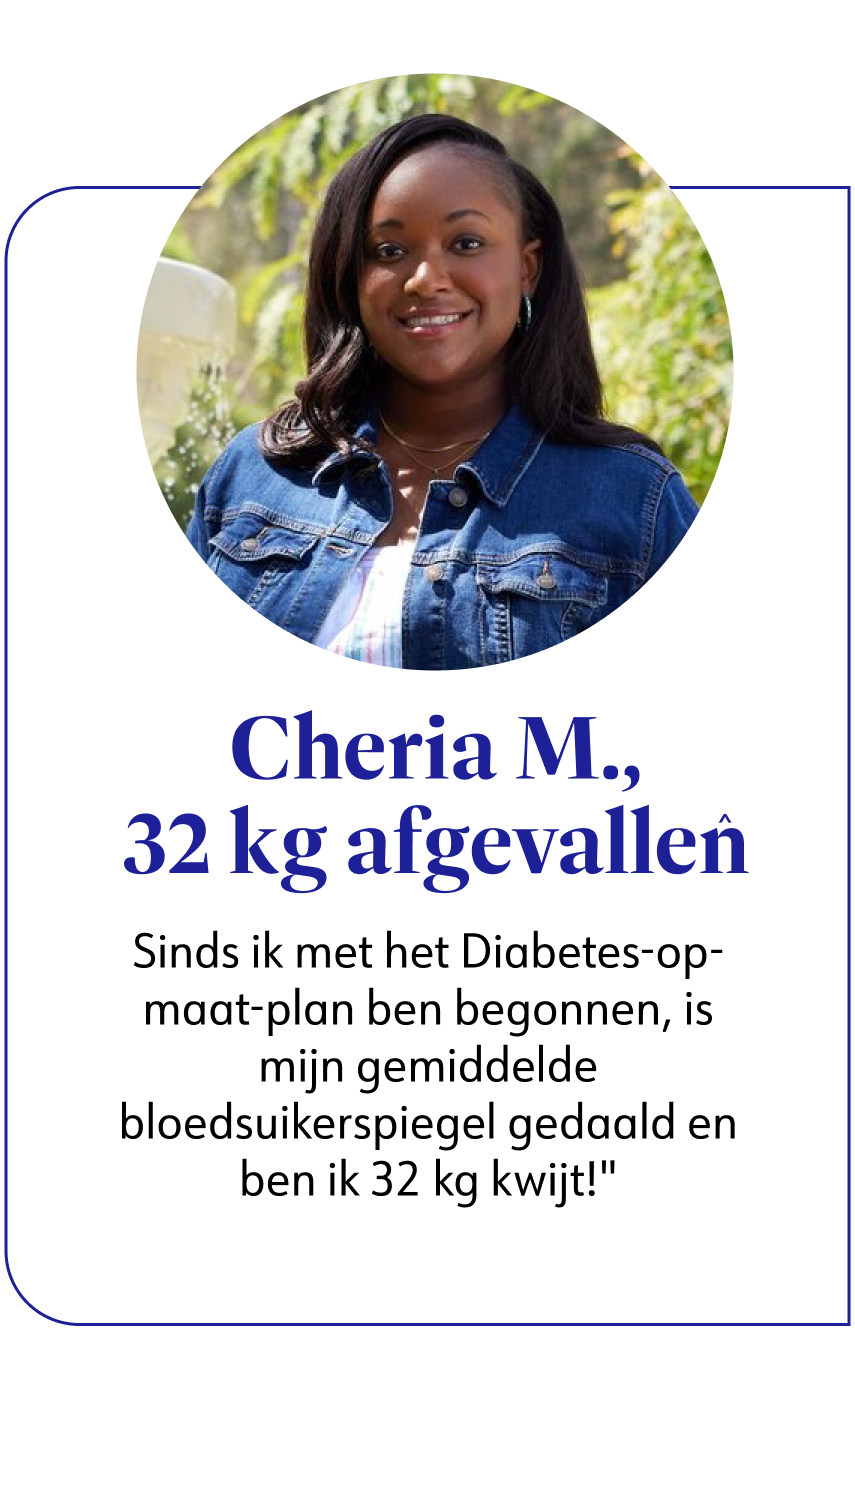 WW member Cheria die 32 kilo is afgevallen